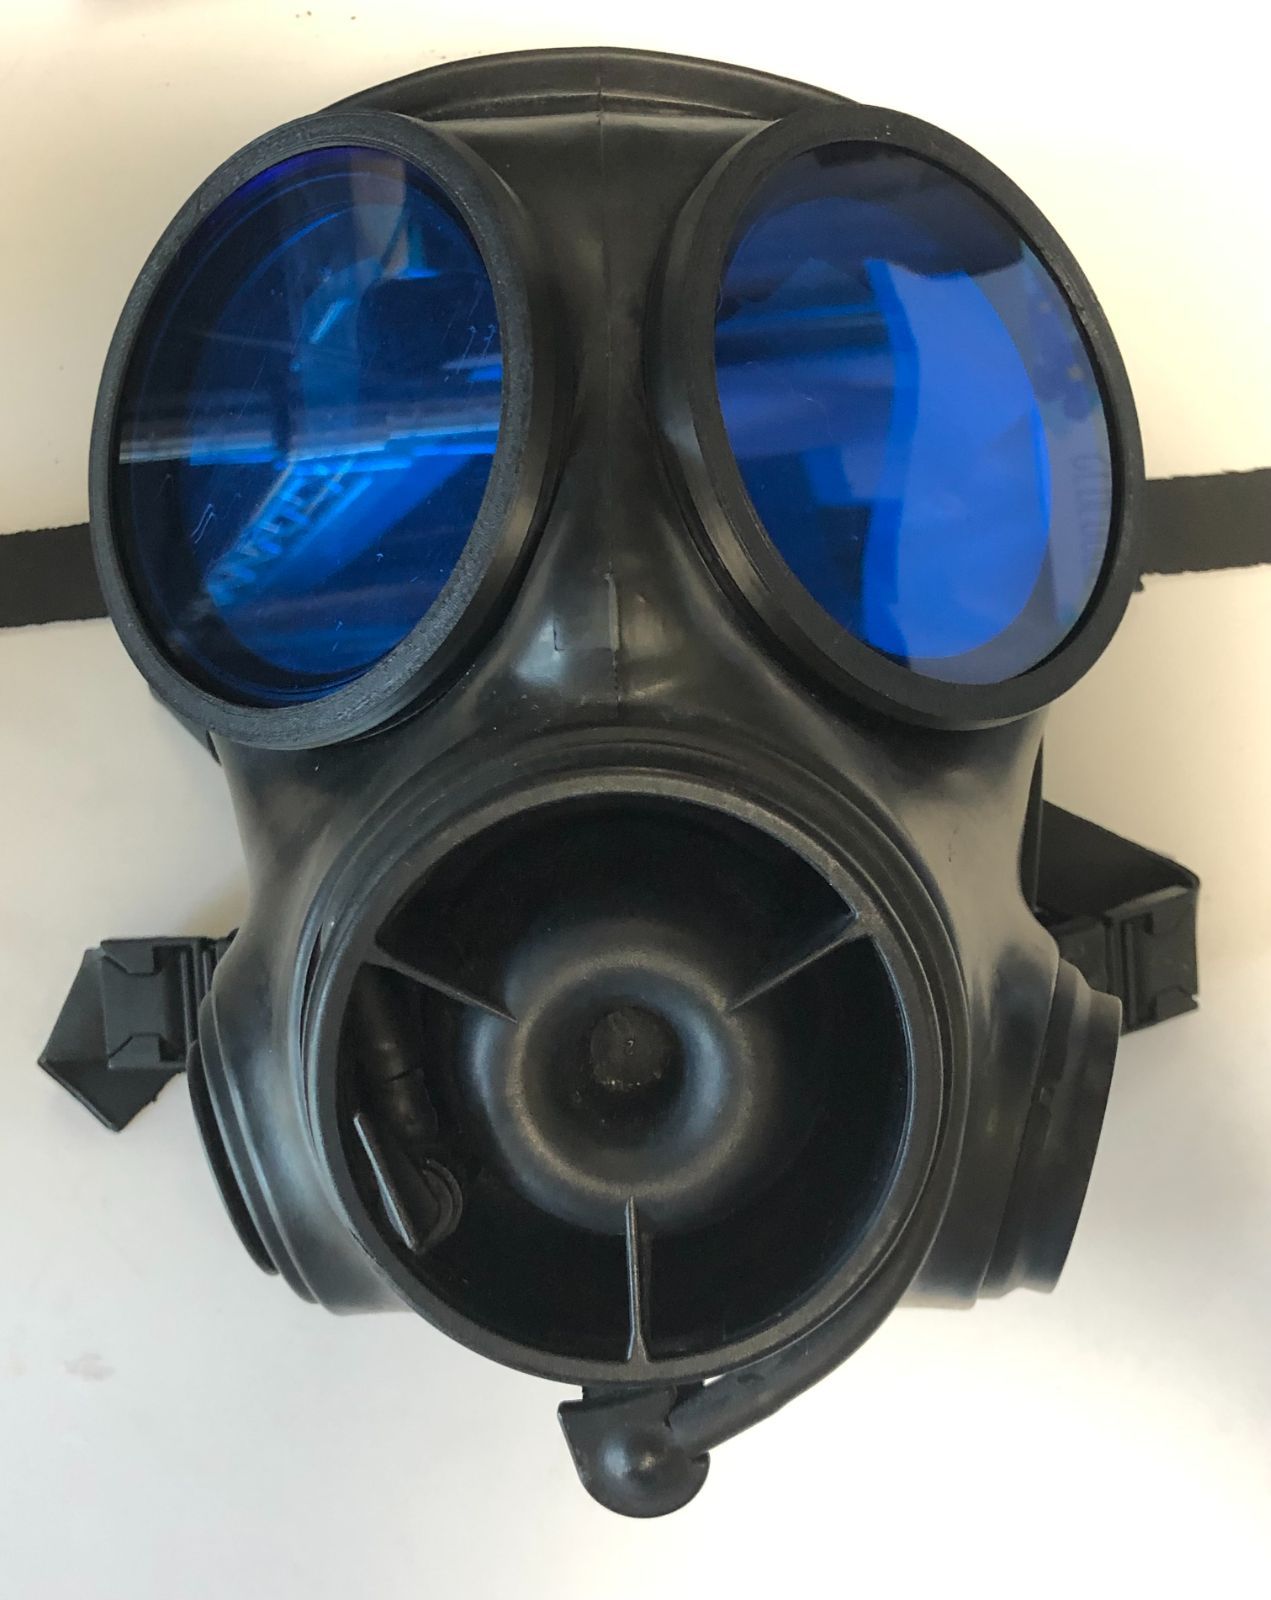 イギリス軍S10ガスマスク用レンズ Blue 青 GasMask 外付けリング付 